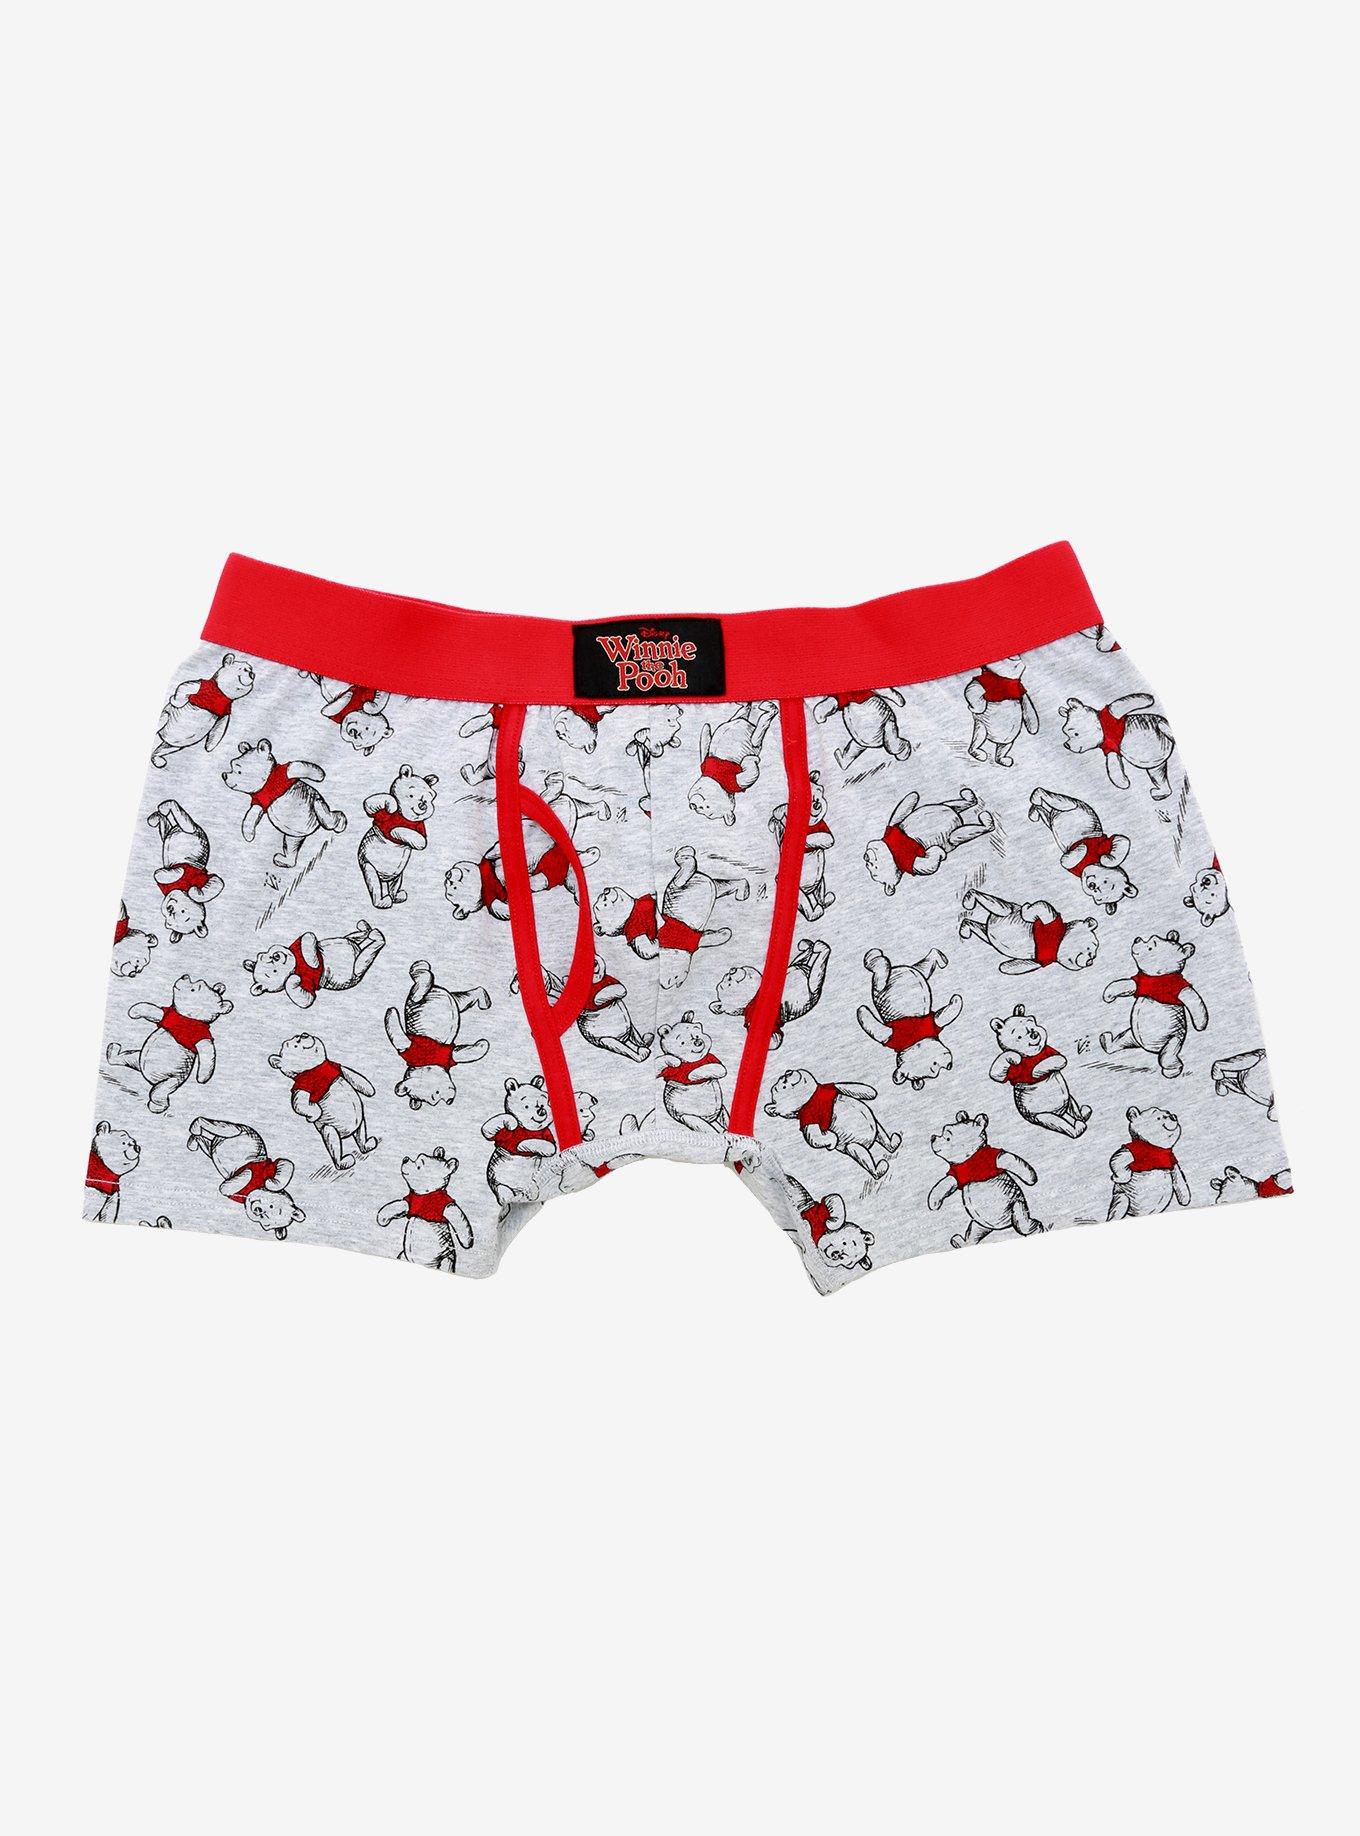 Don't Poke The Bear Men's Boxer Briefs Underwear by Hatley